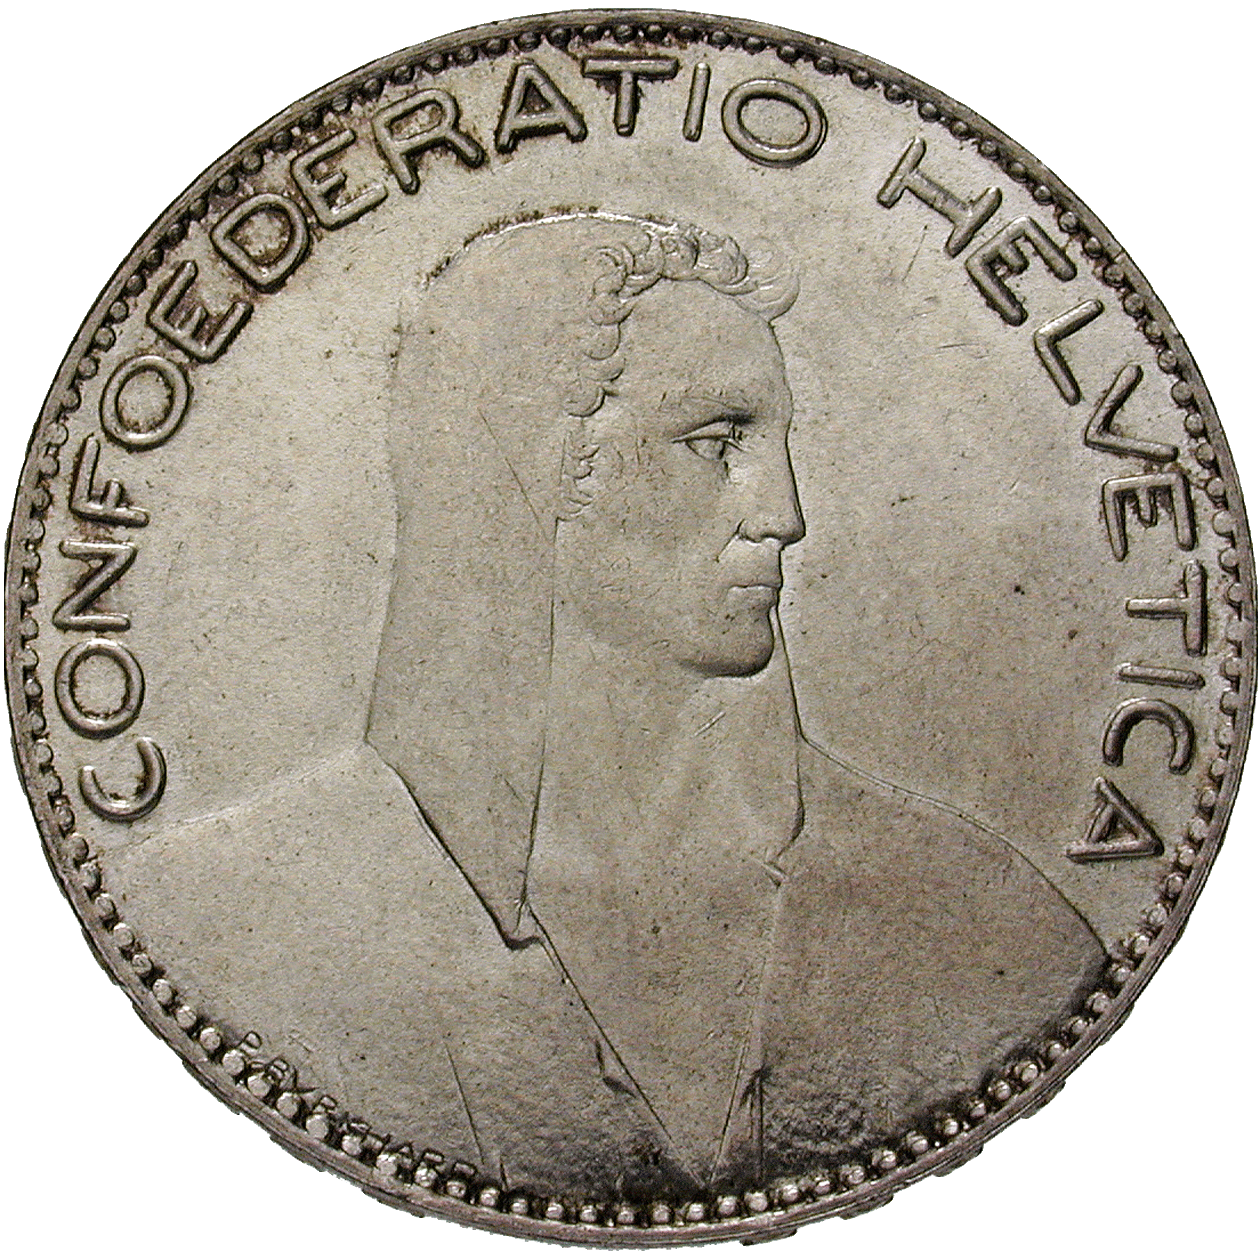 Swiss Confederation, 5 Francs 1922 (obverse)